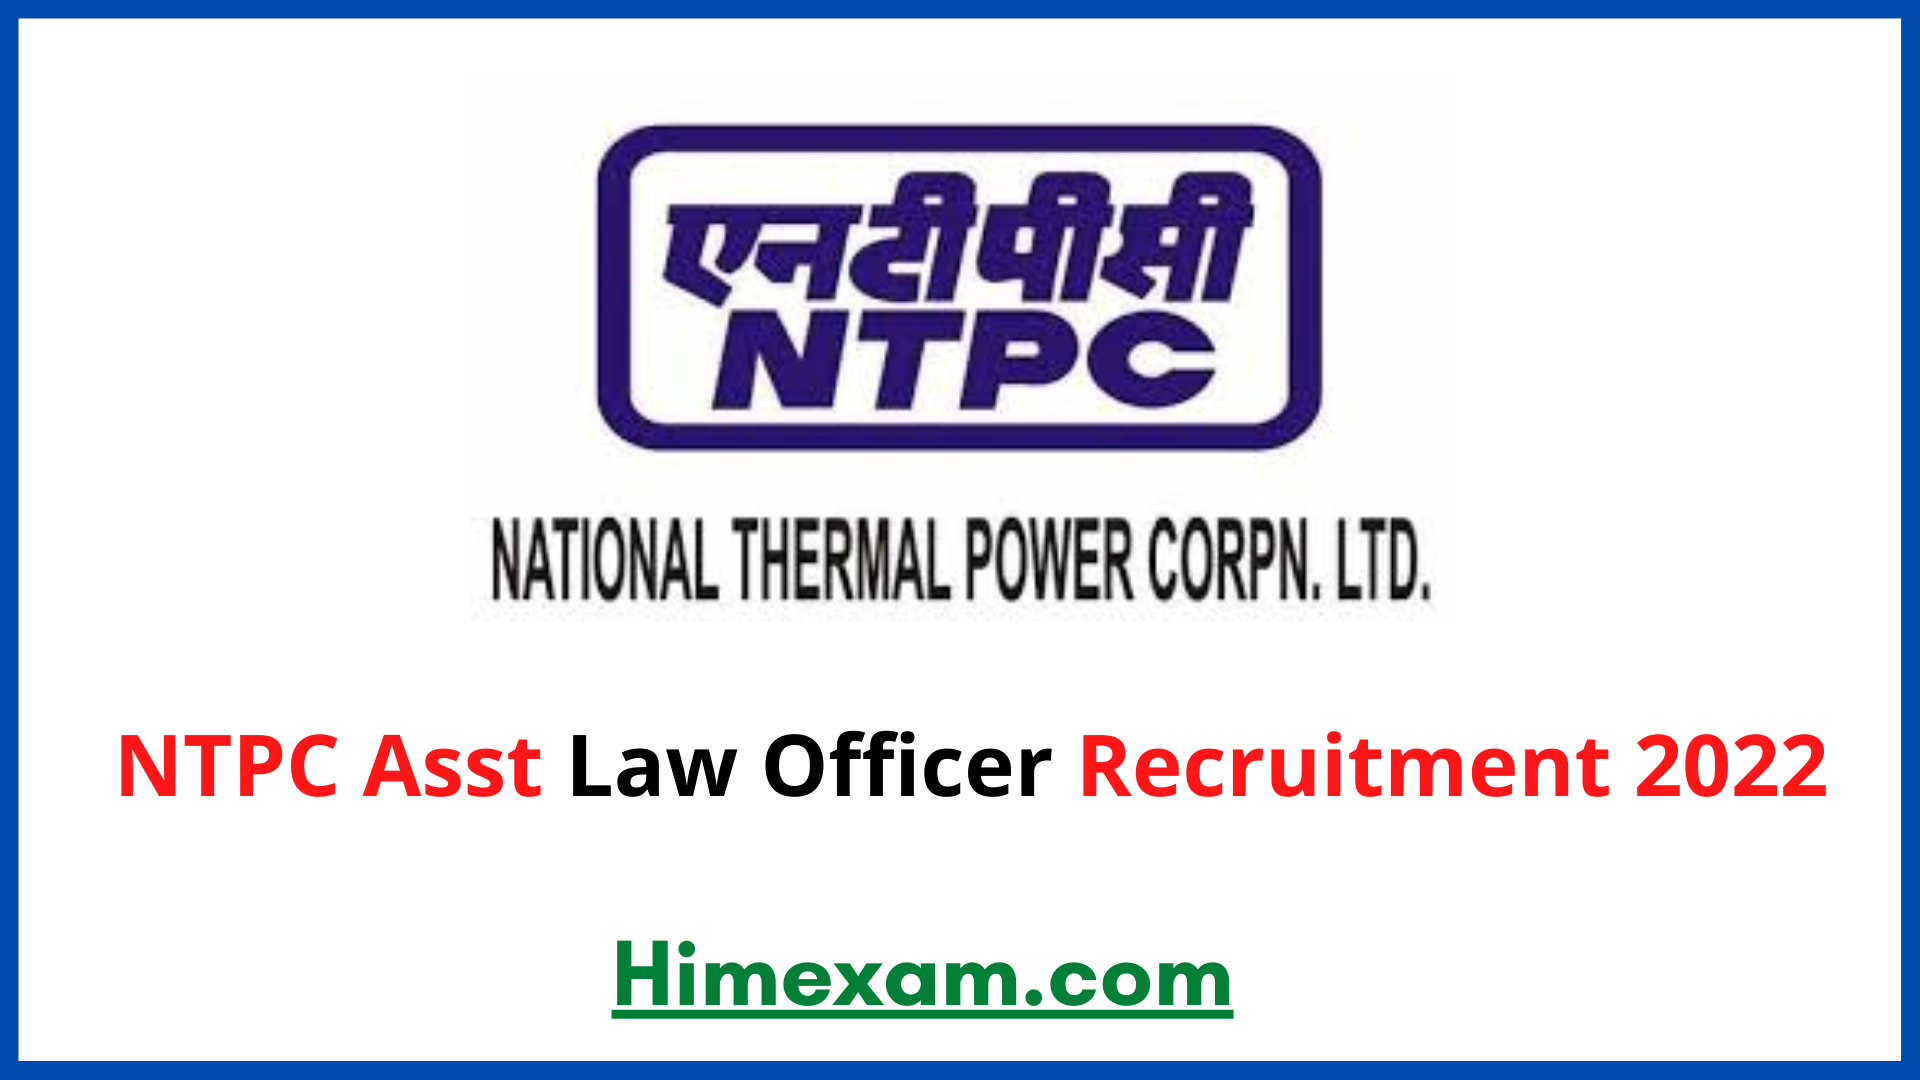 NTPC Asst Law Officer Recruitment 2022